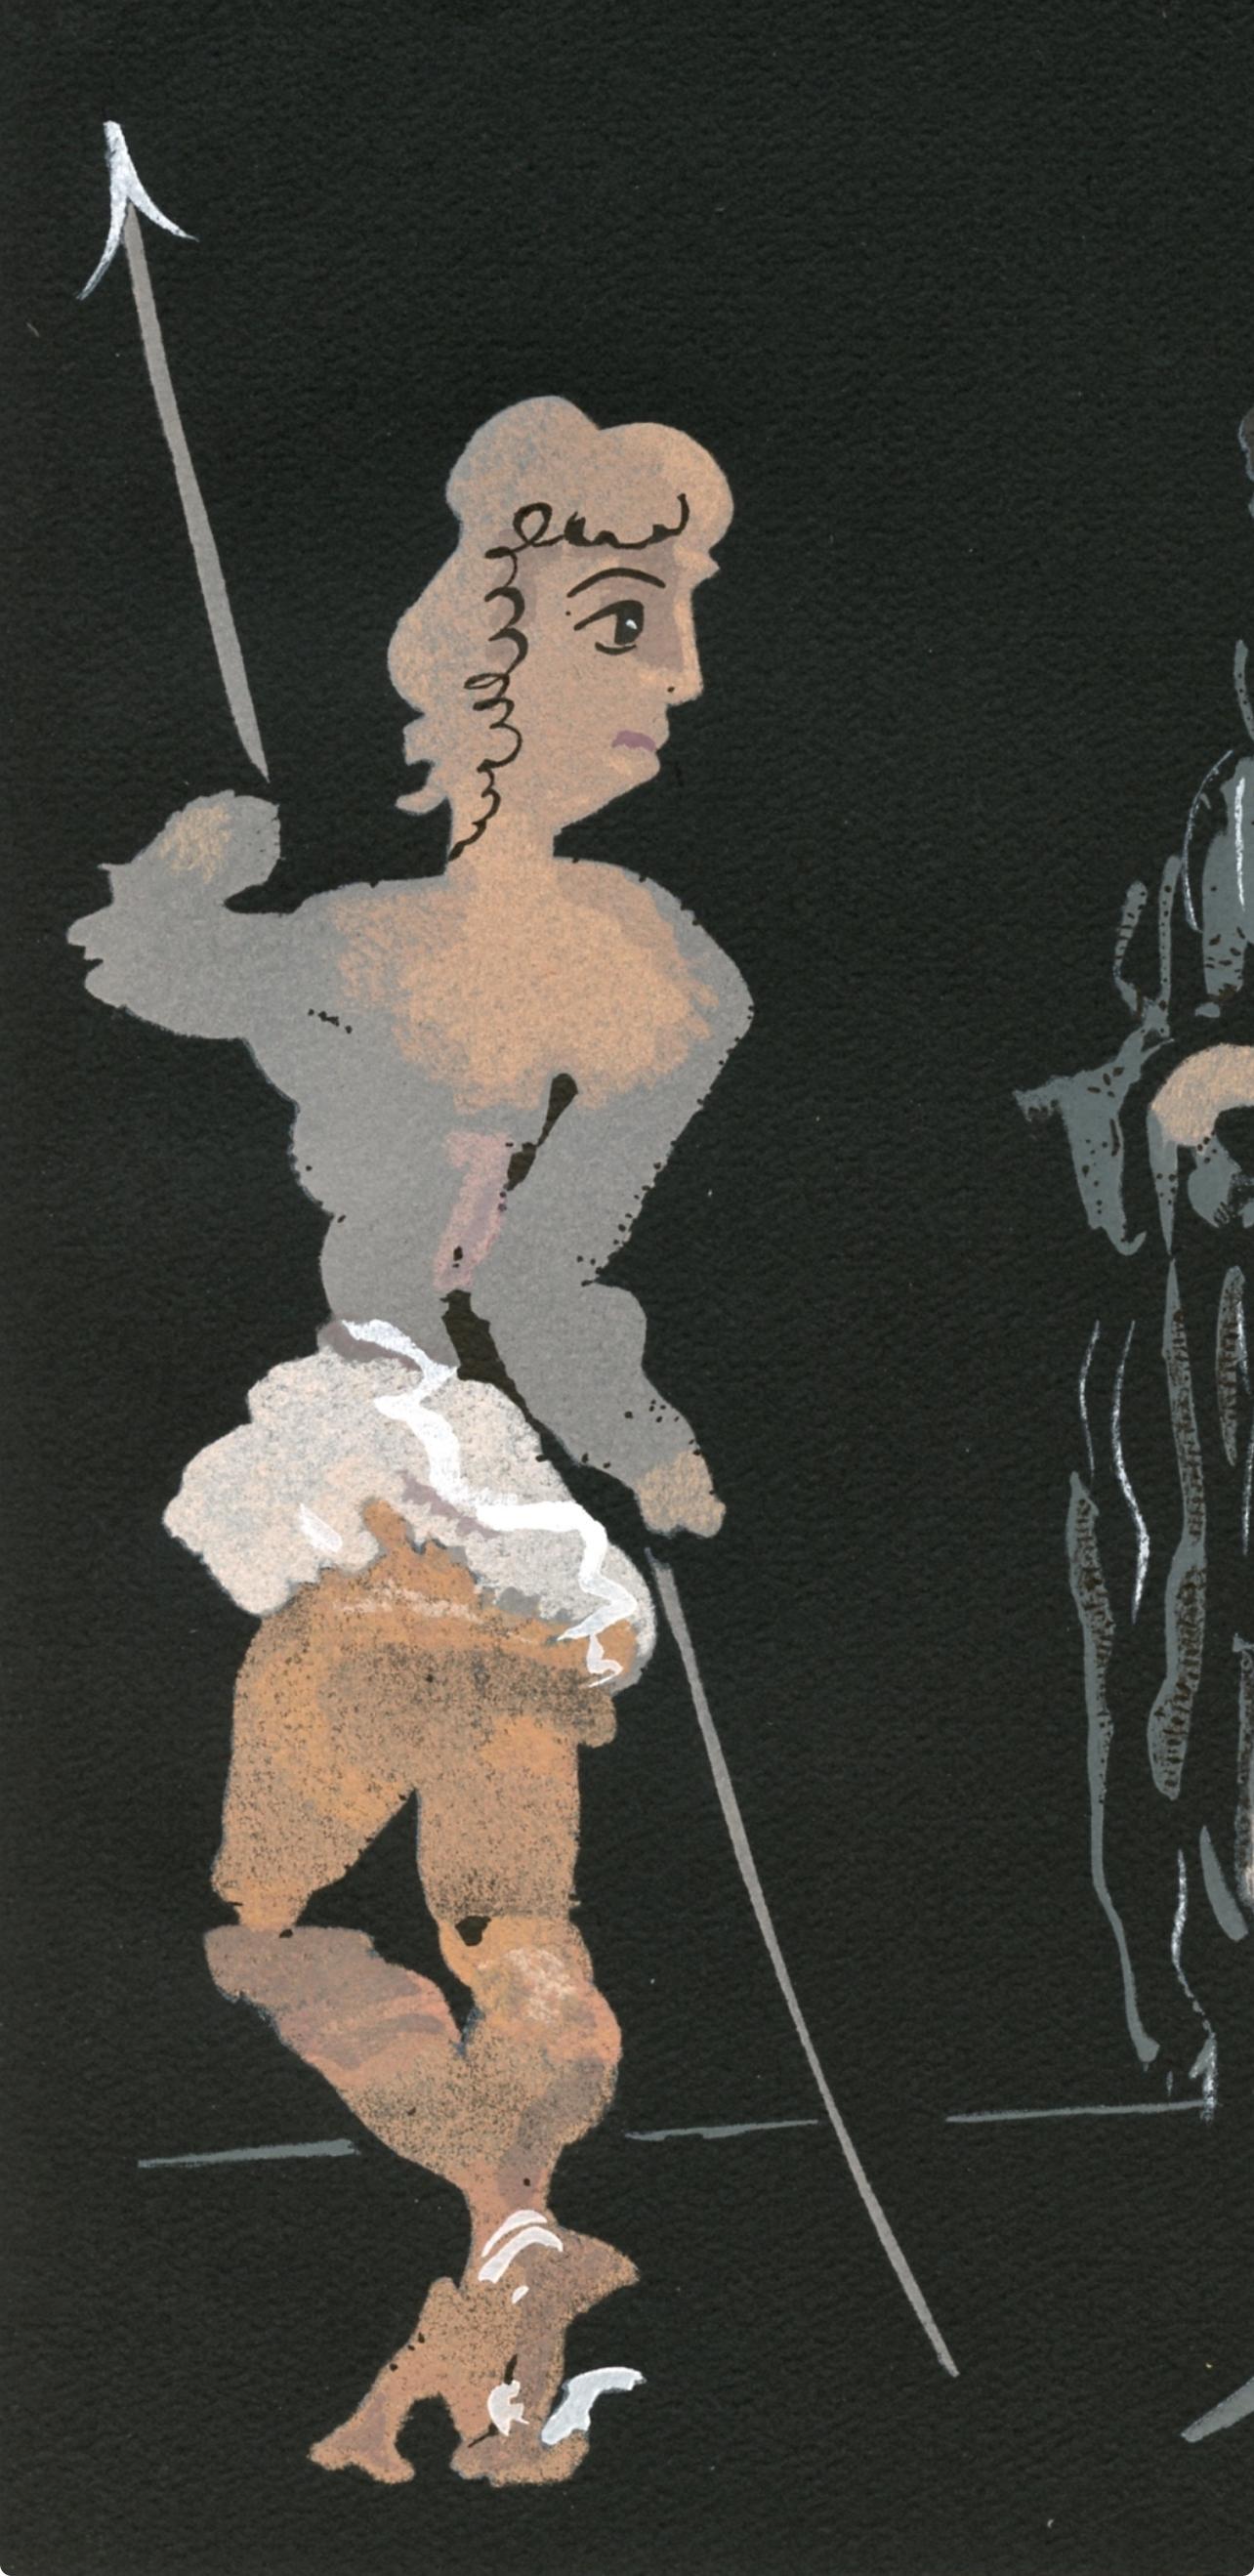 Derain, Composition, Salomé, The Limited Editions Club (d'après) - Print de André Derain